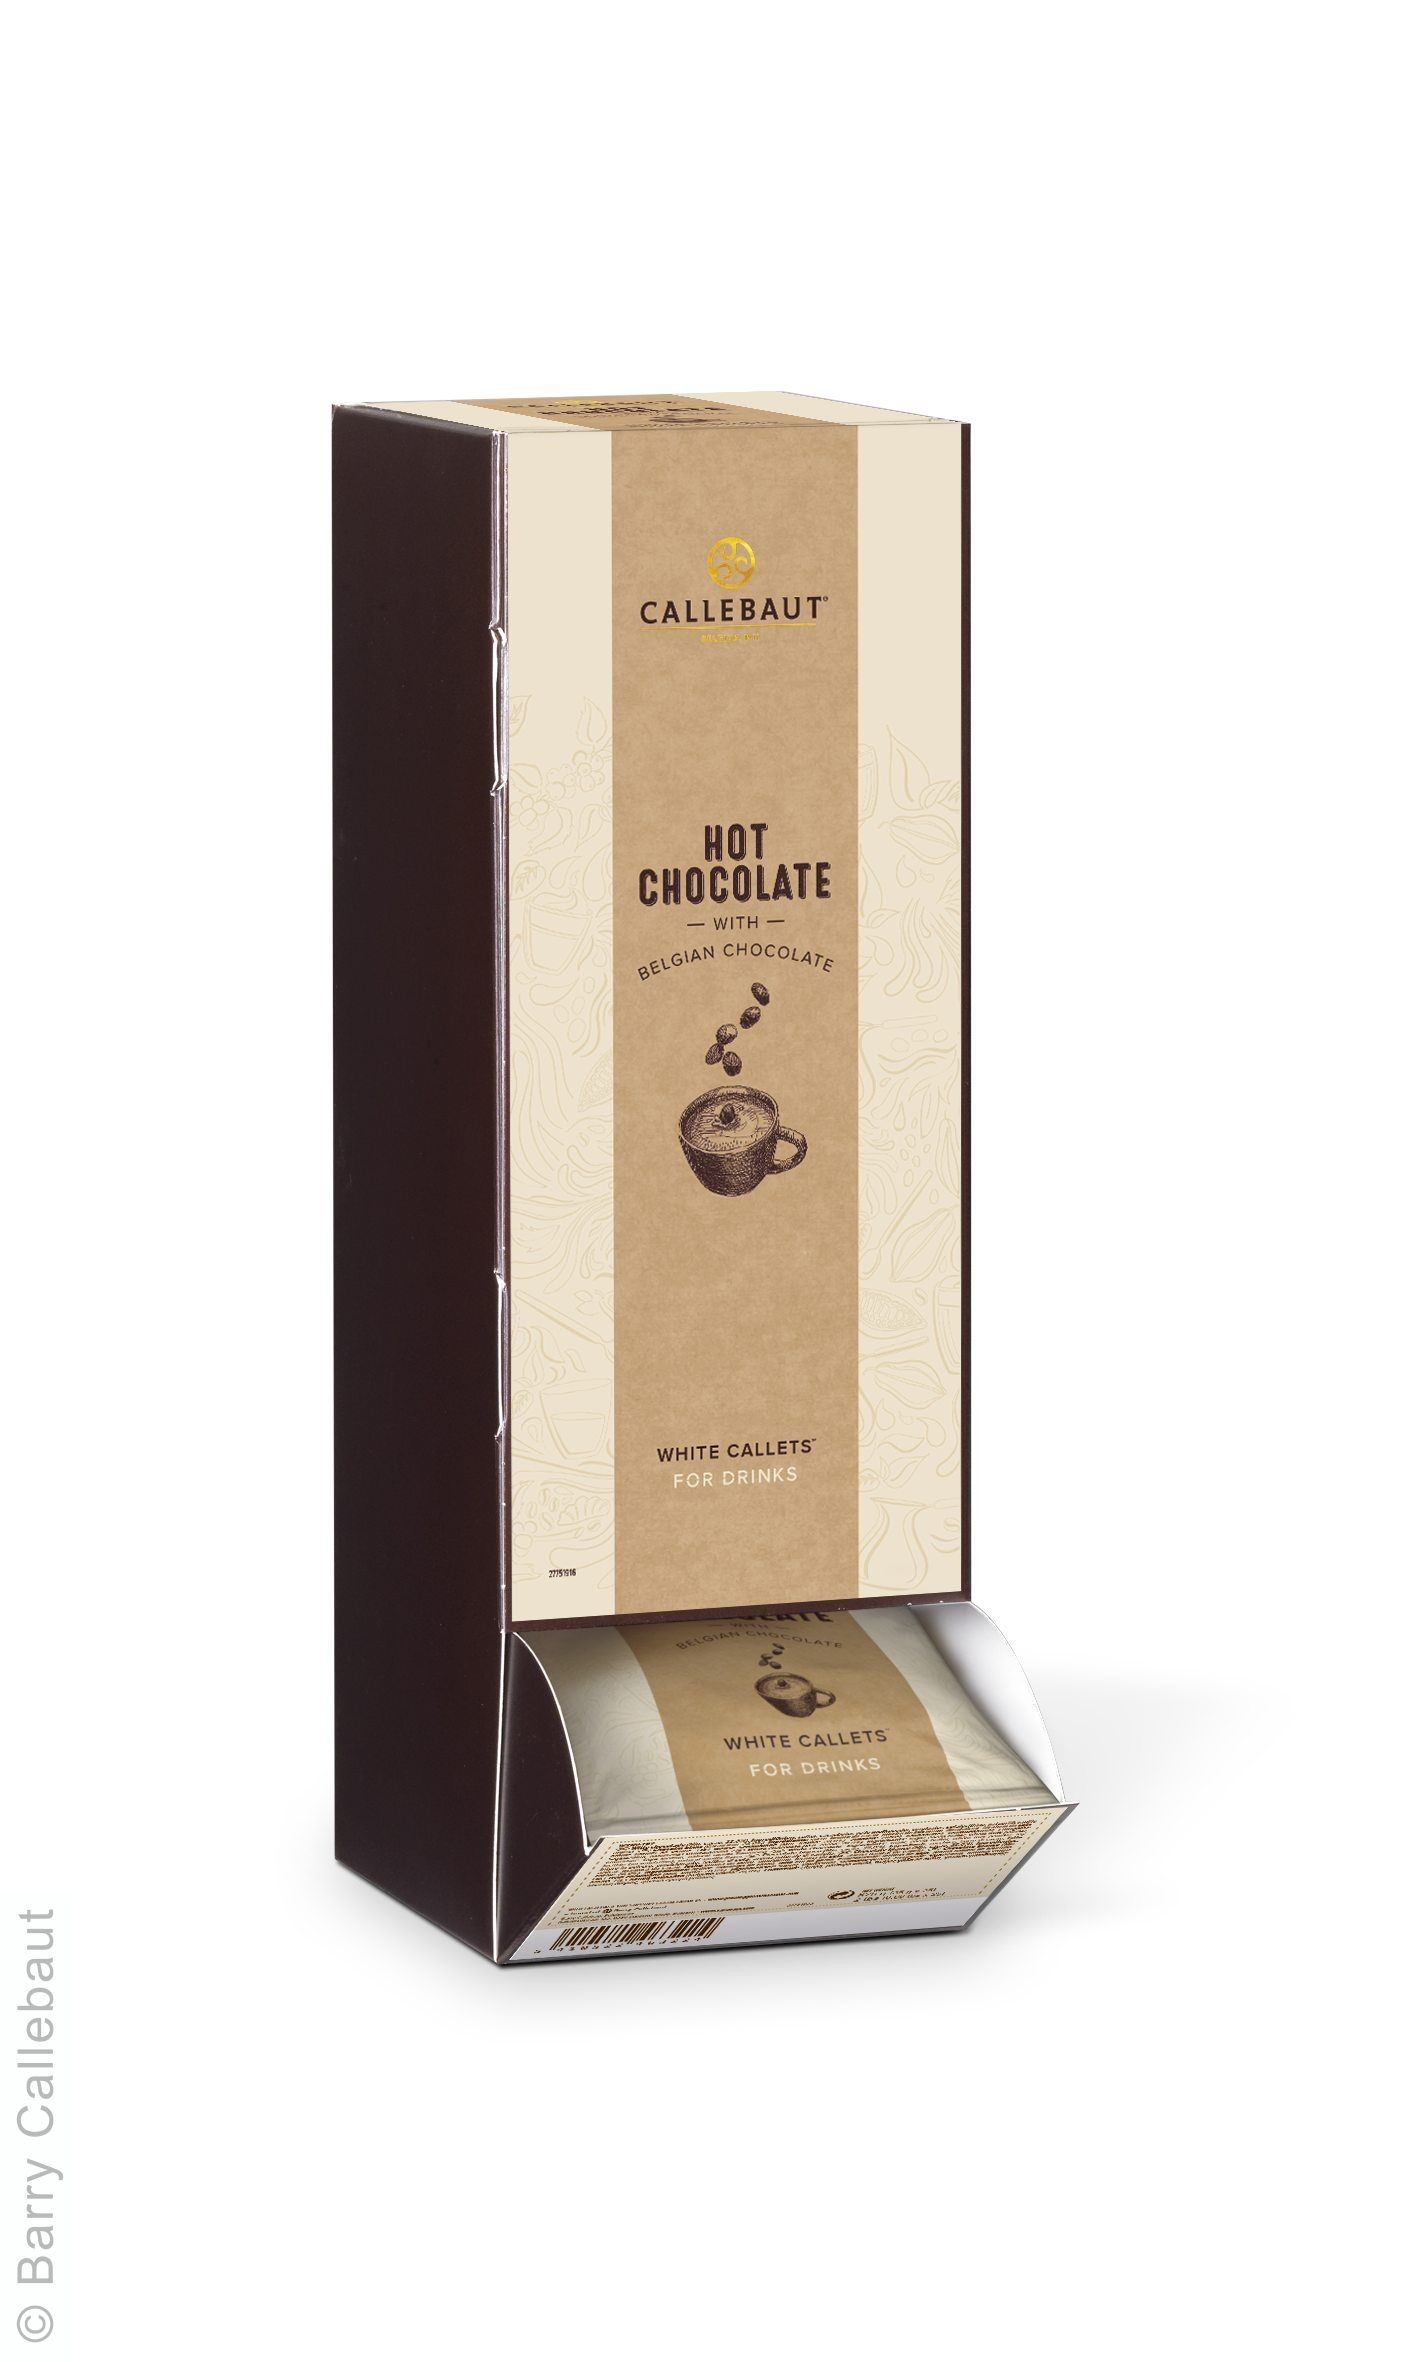 Callebaut callets sensation donkere parels 2,5kg